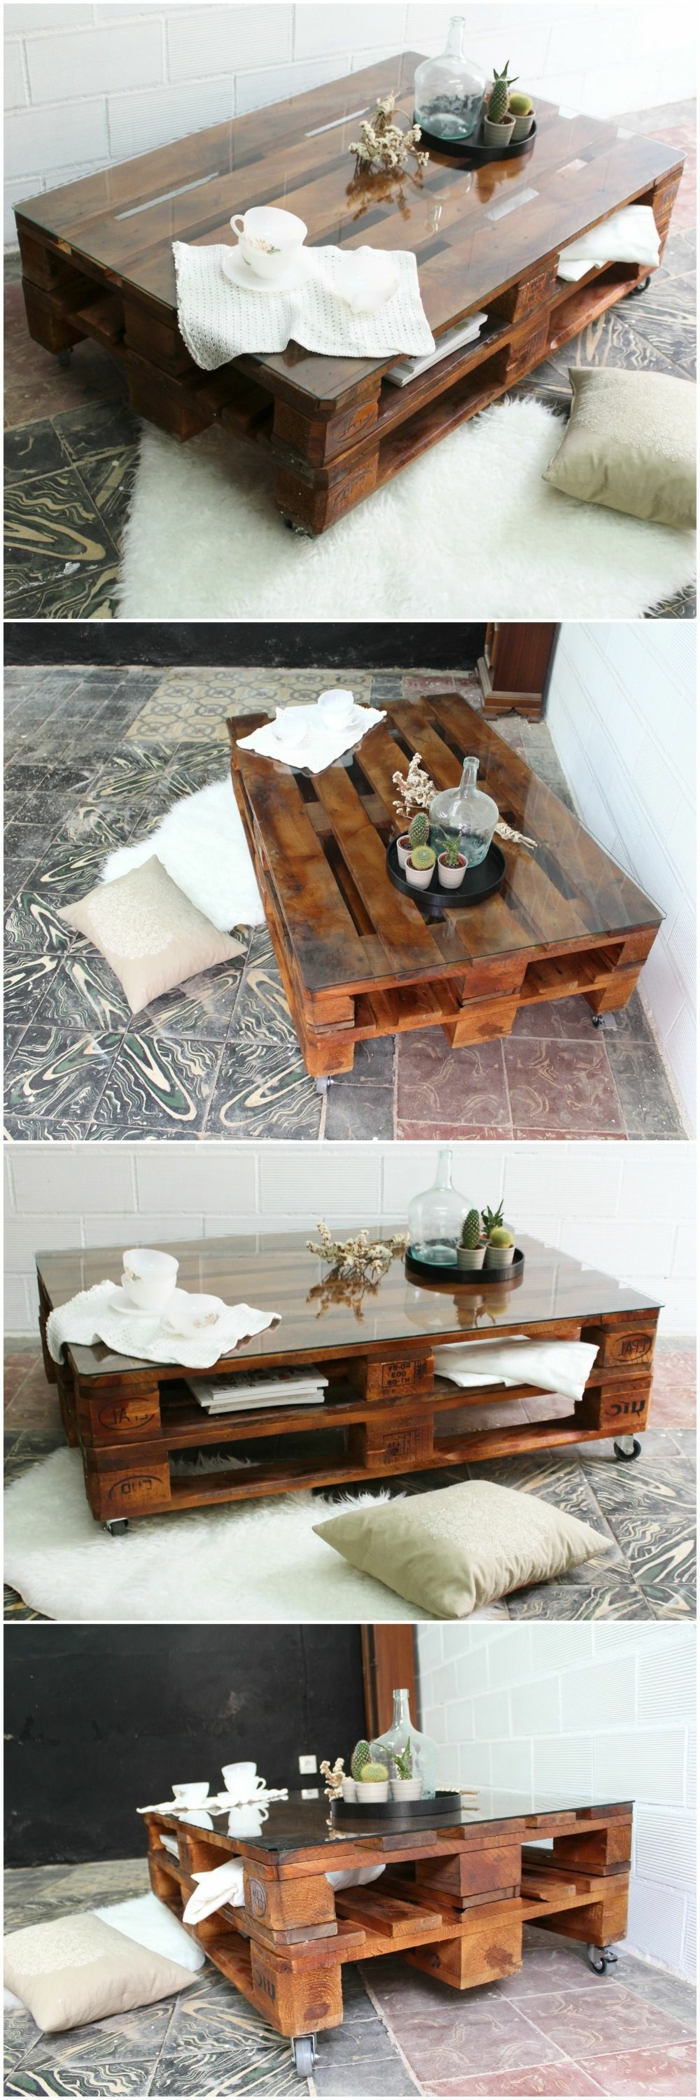 cuatro fotos de la misma mesa vista de diferentes sitios, pintada en marrón, mesas con palets